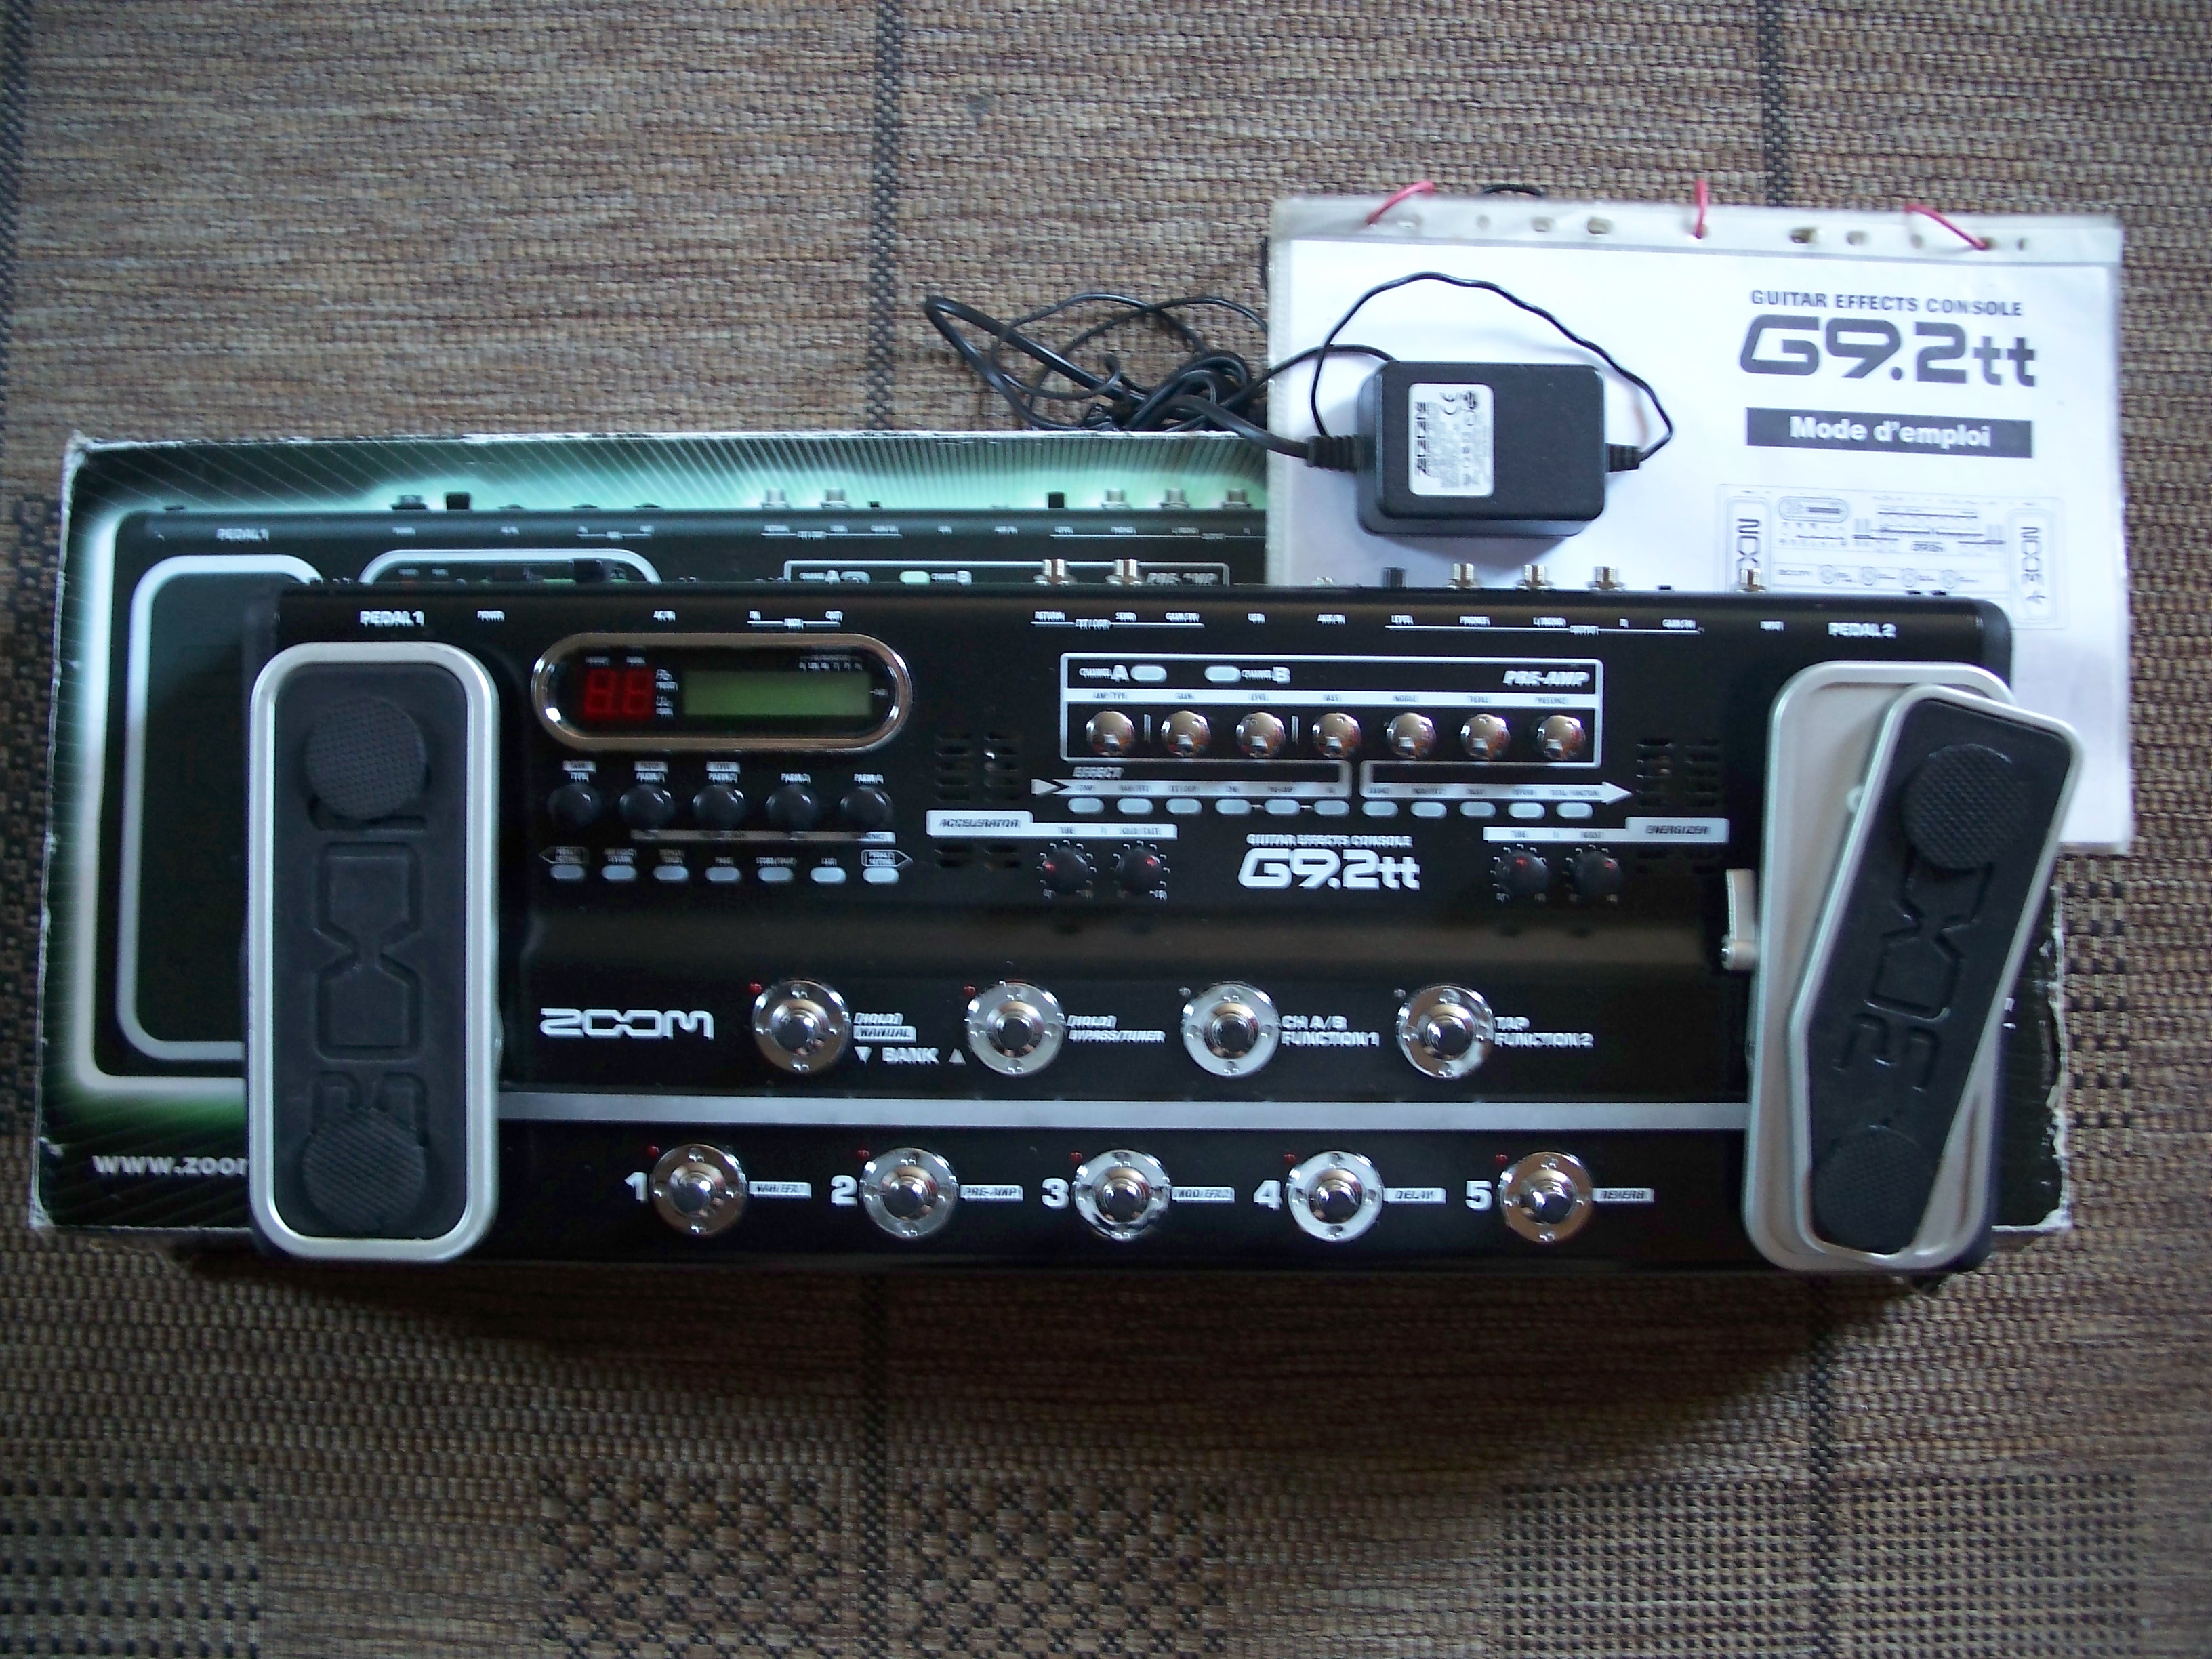 G9.2TT - Zoom G9.2tt - Audiofanzine